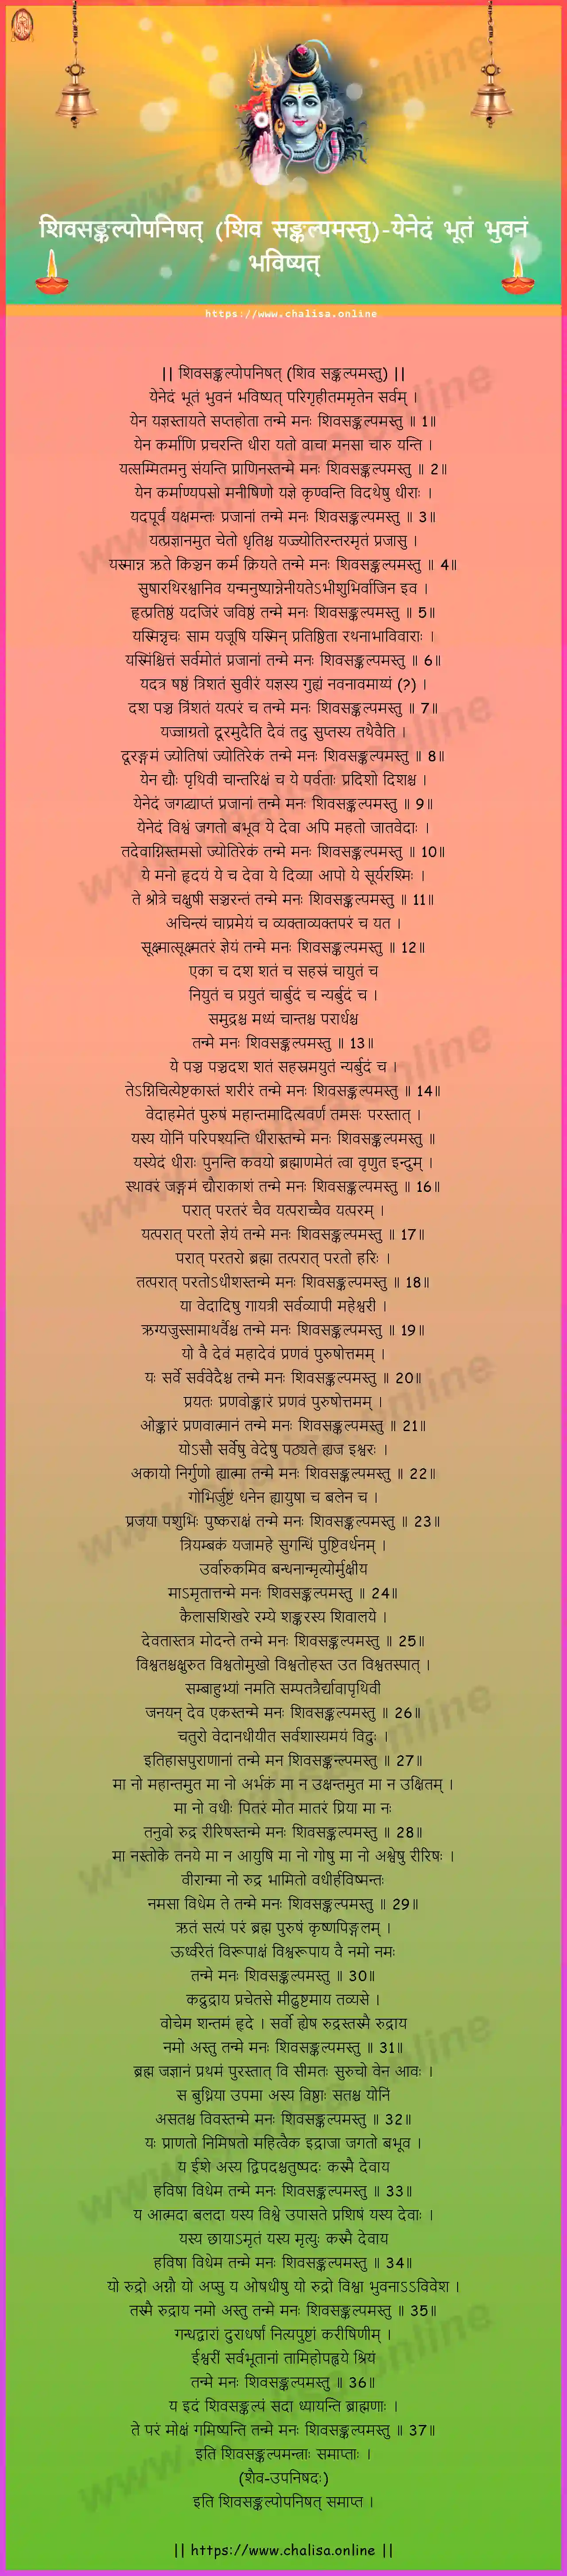 yenedam-bhutam-shiva-sankalpa-upanishad-shiva-sankalpamastu-sanskrit-sanskrit-lyrics-download